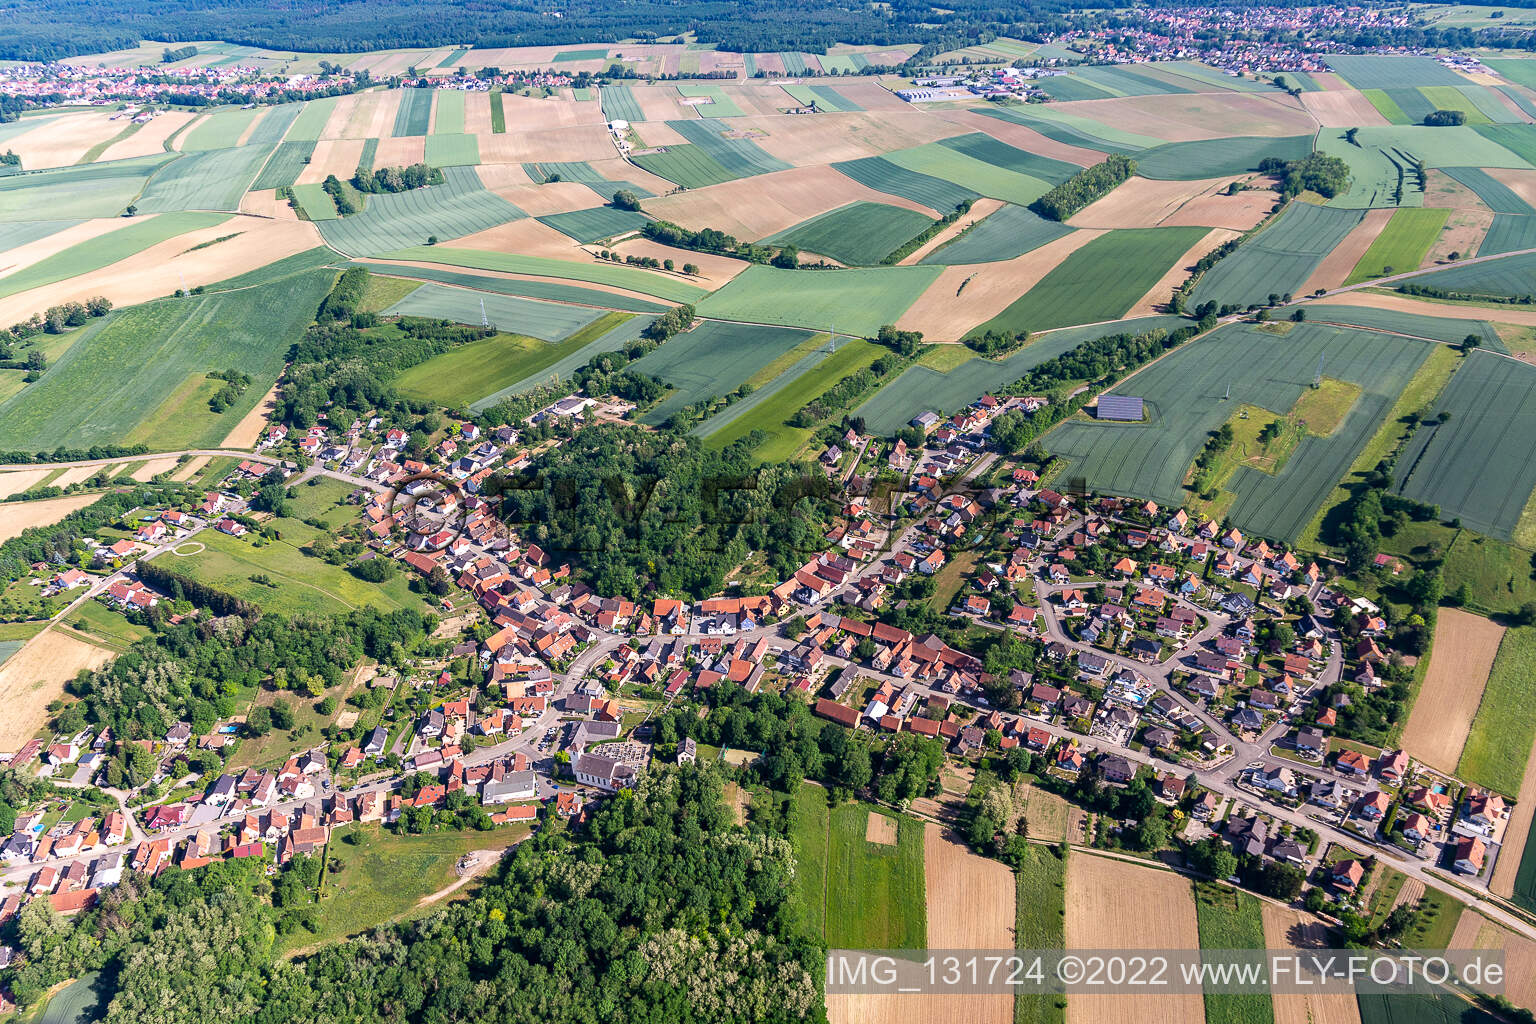 Neewiller-près-Lauterbourg im Bundesland Bas-Rhin, Frankreich von der Drohne aus gesehen